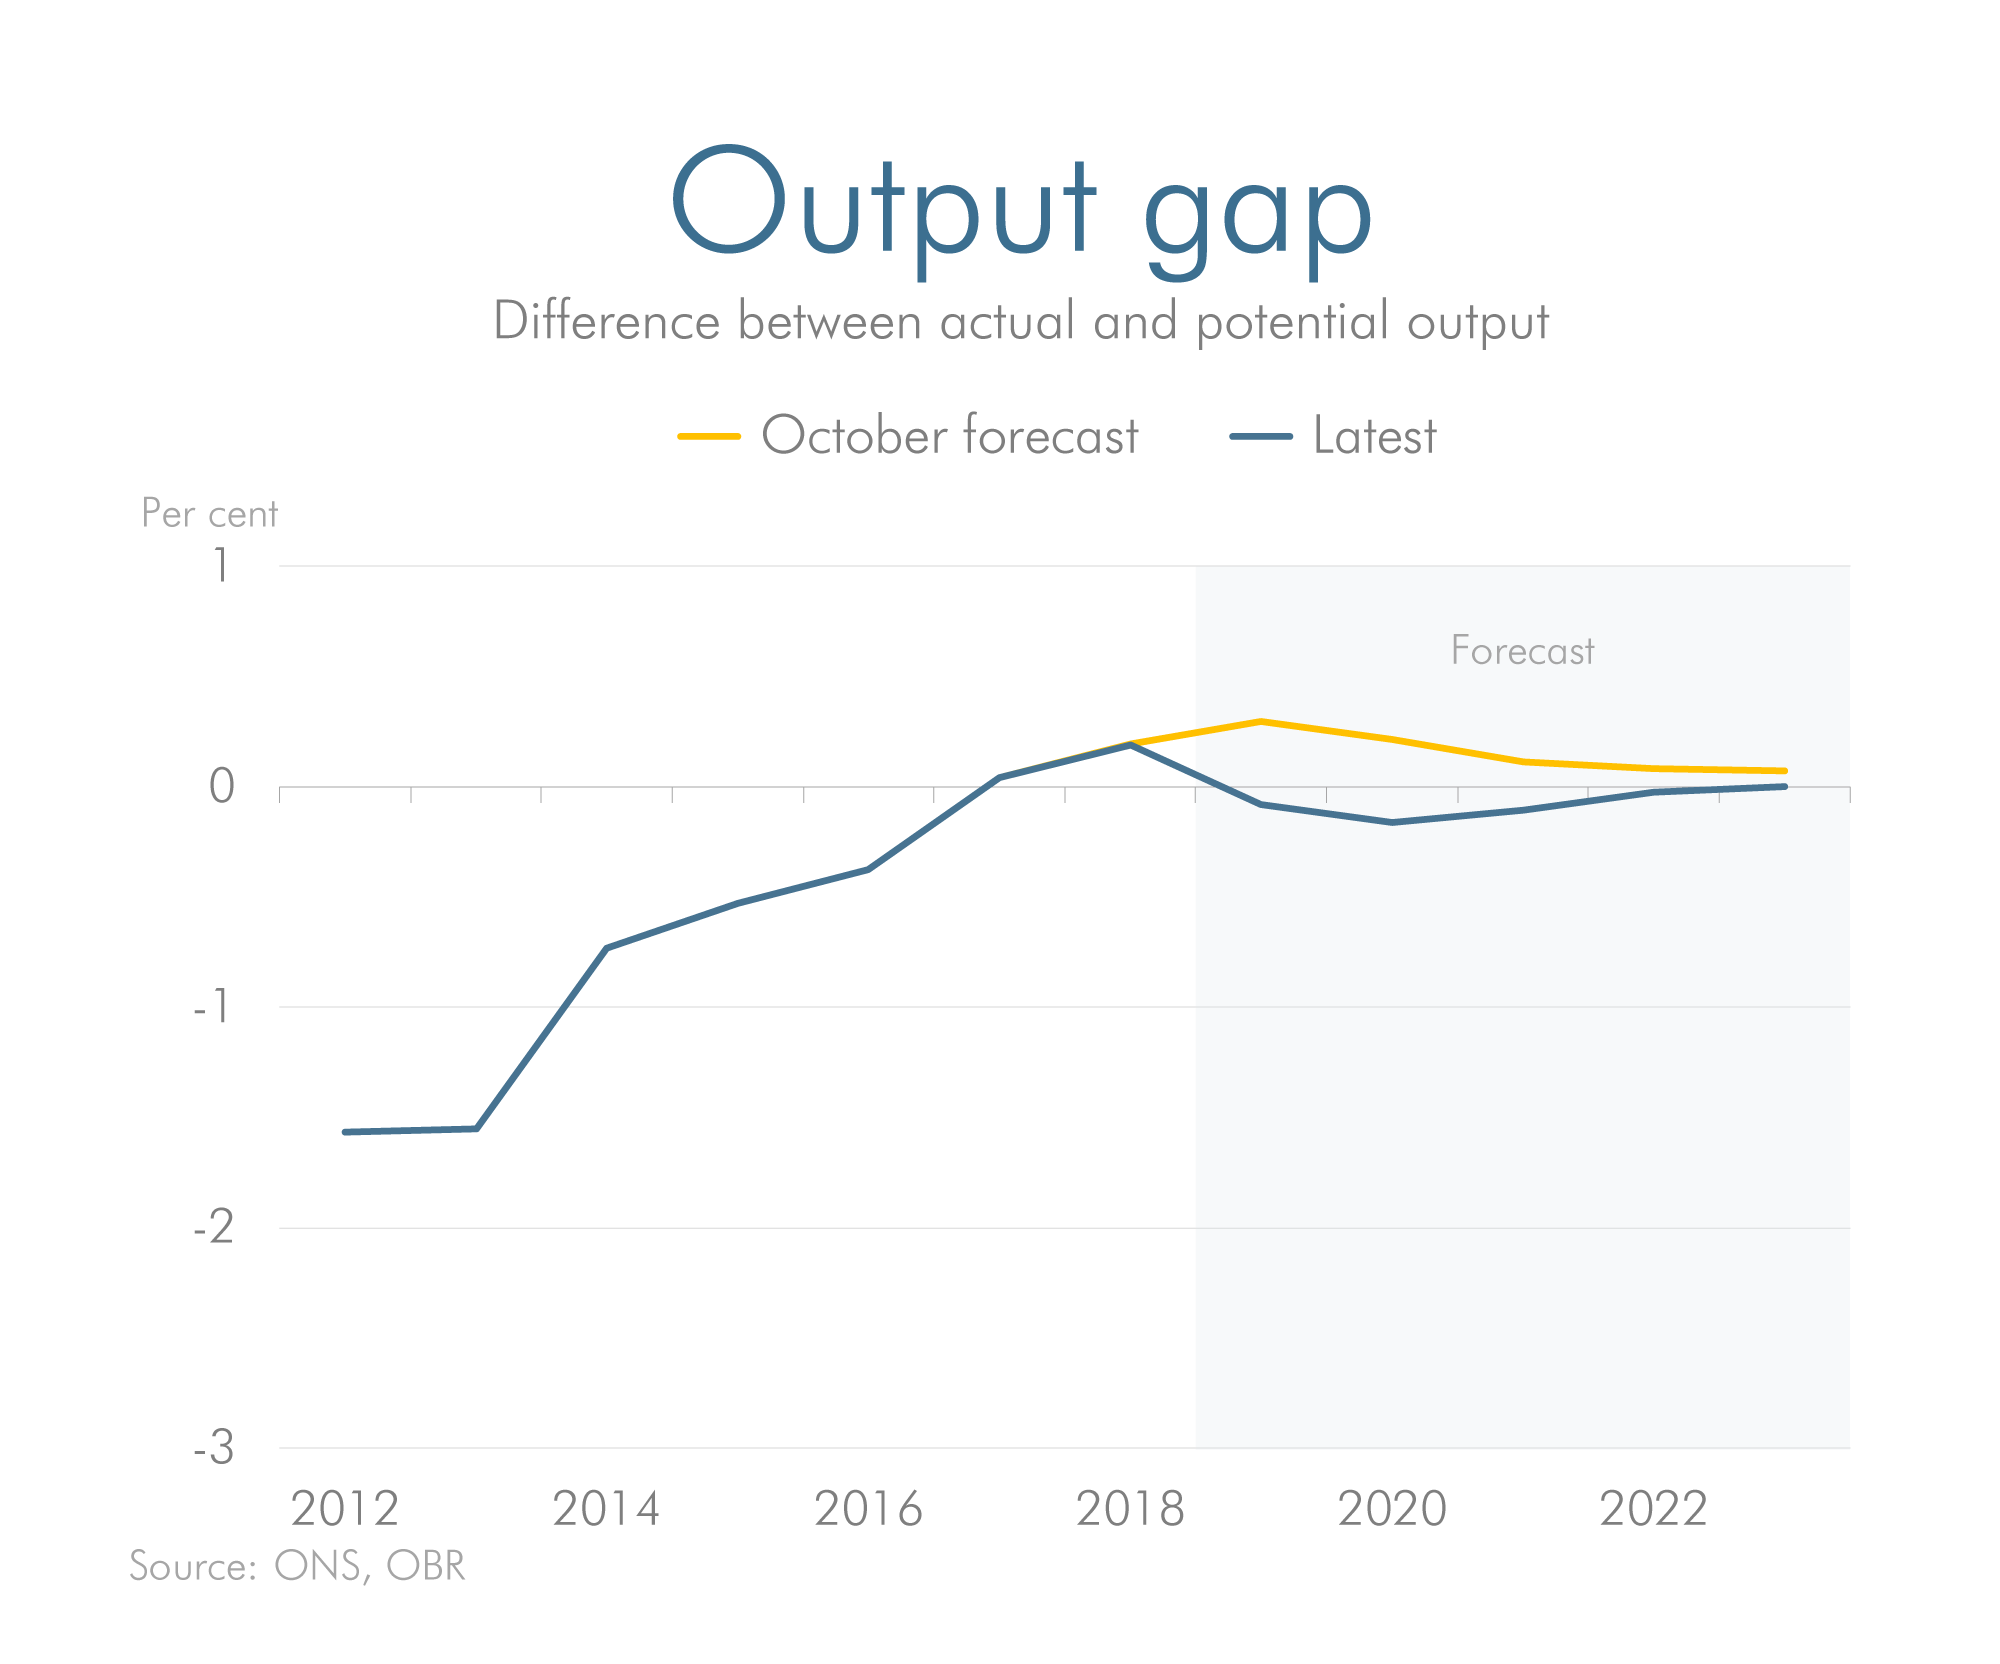 Latest forecast versus previous forecast for output gap